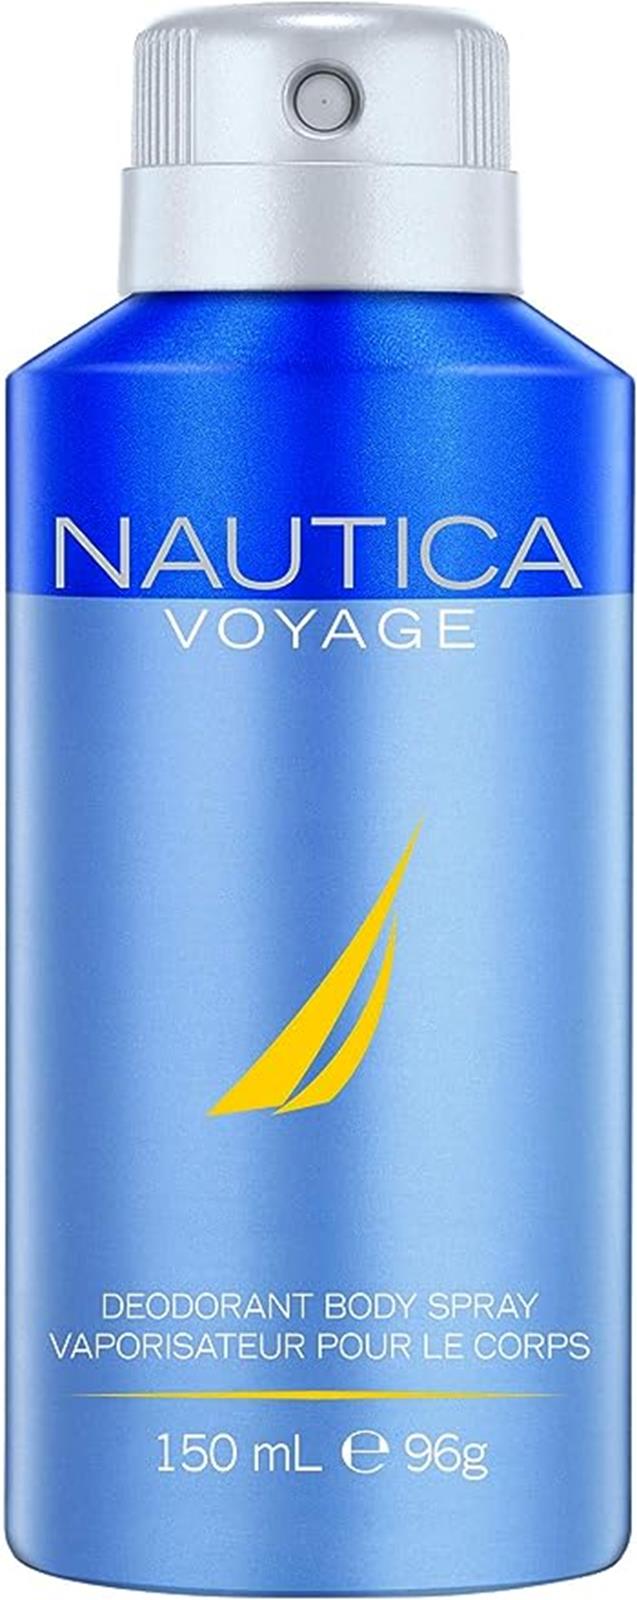 Nautica Voyage by Nautica 150ml Deodorant Body Spray